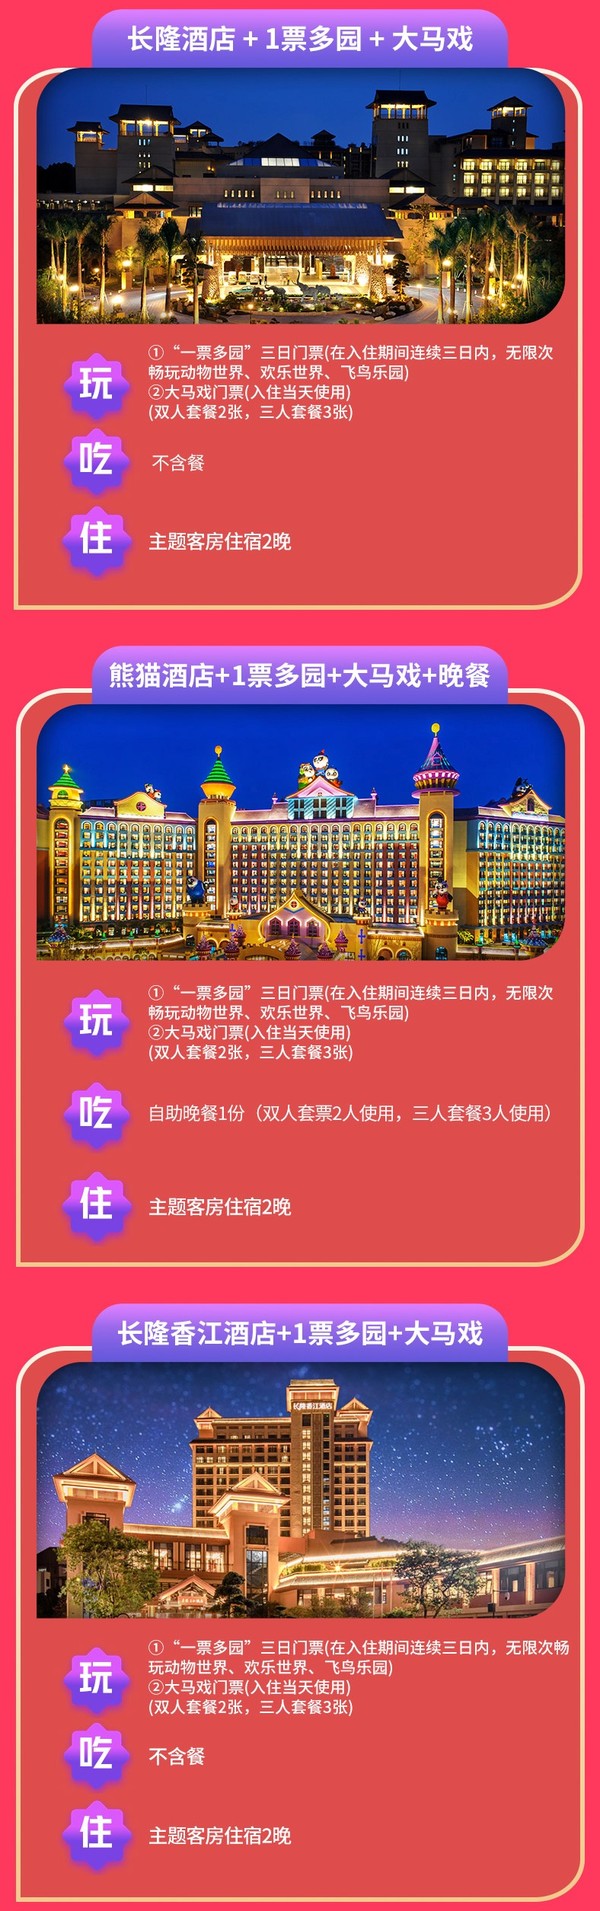 广州长隆/熊猫/香江酒店 主题房2晚（含一票多园畅玩+大马戏）